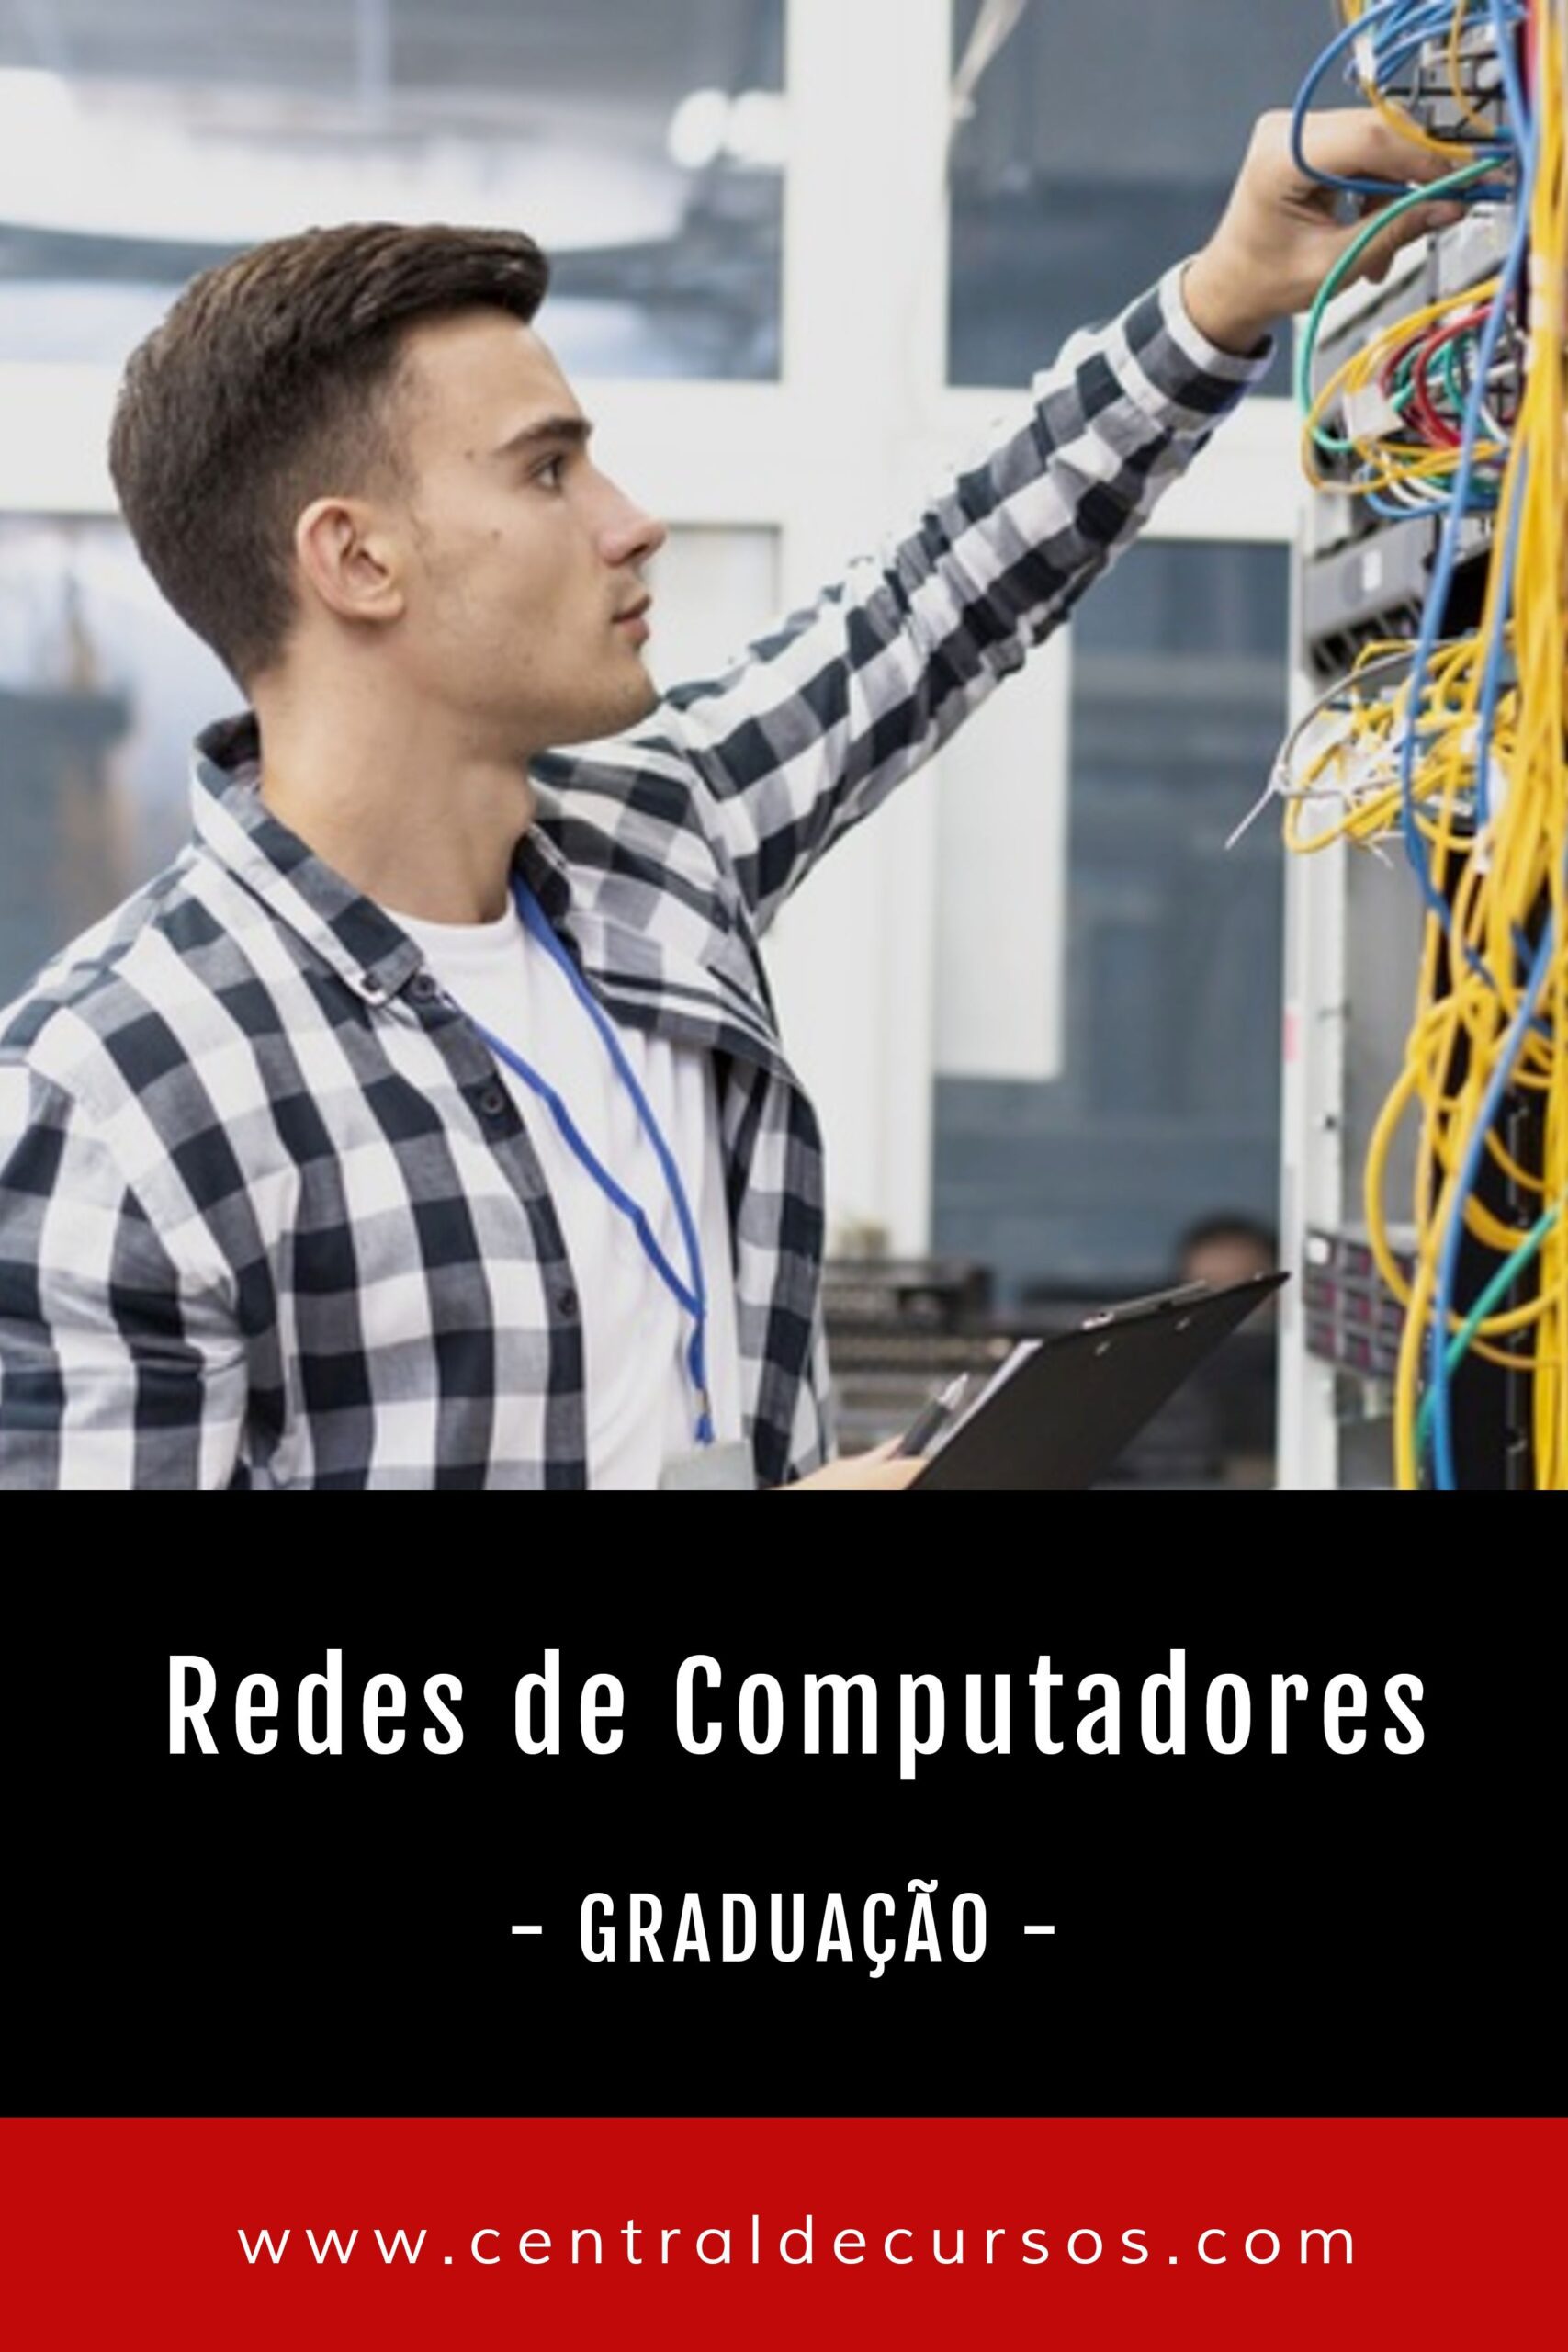 Graduação em rede de computadores